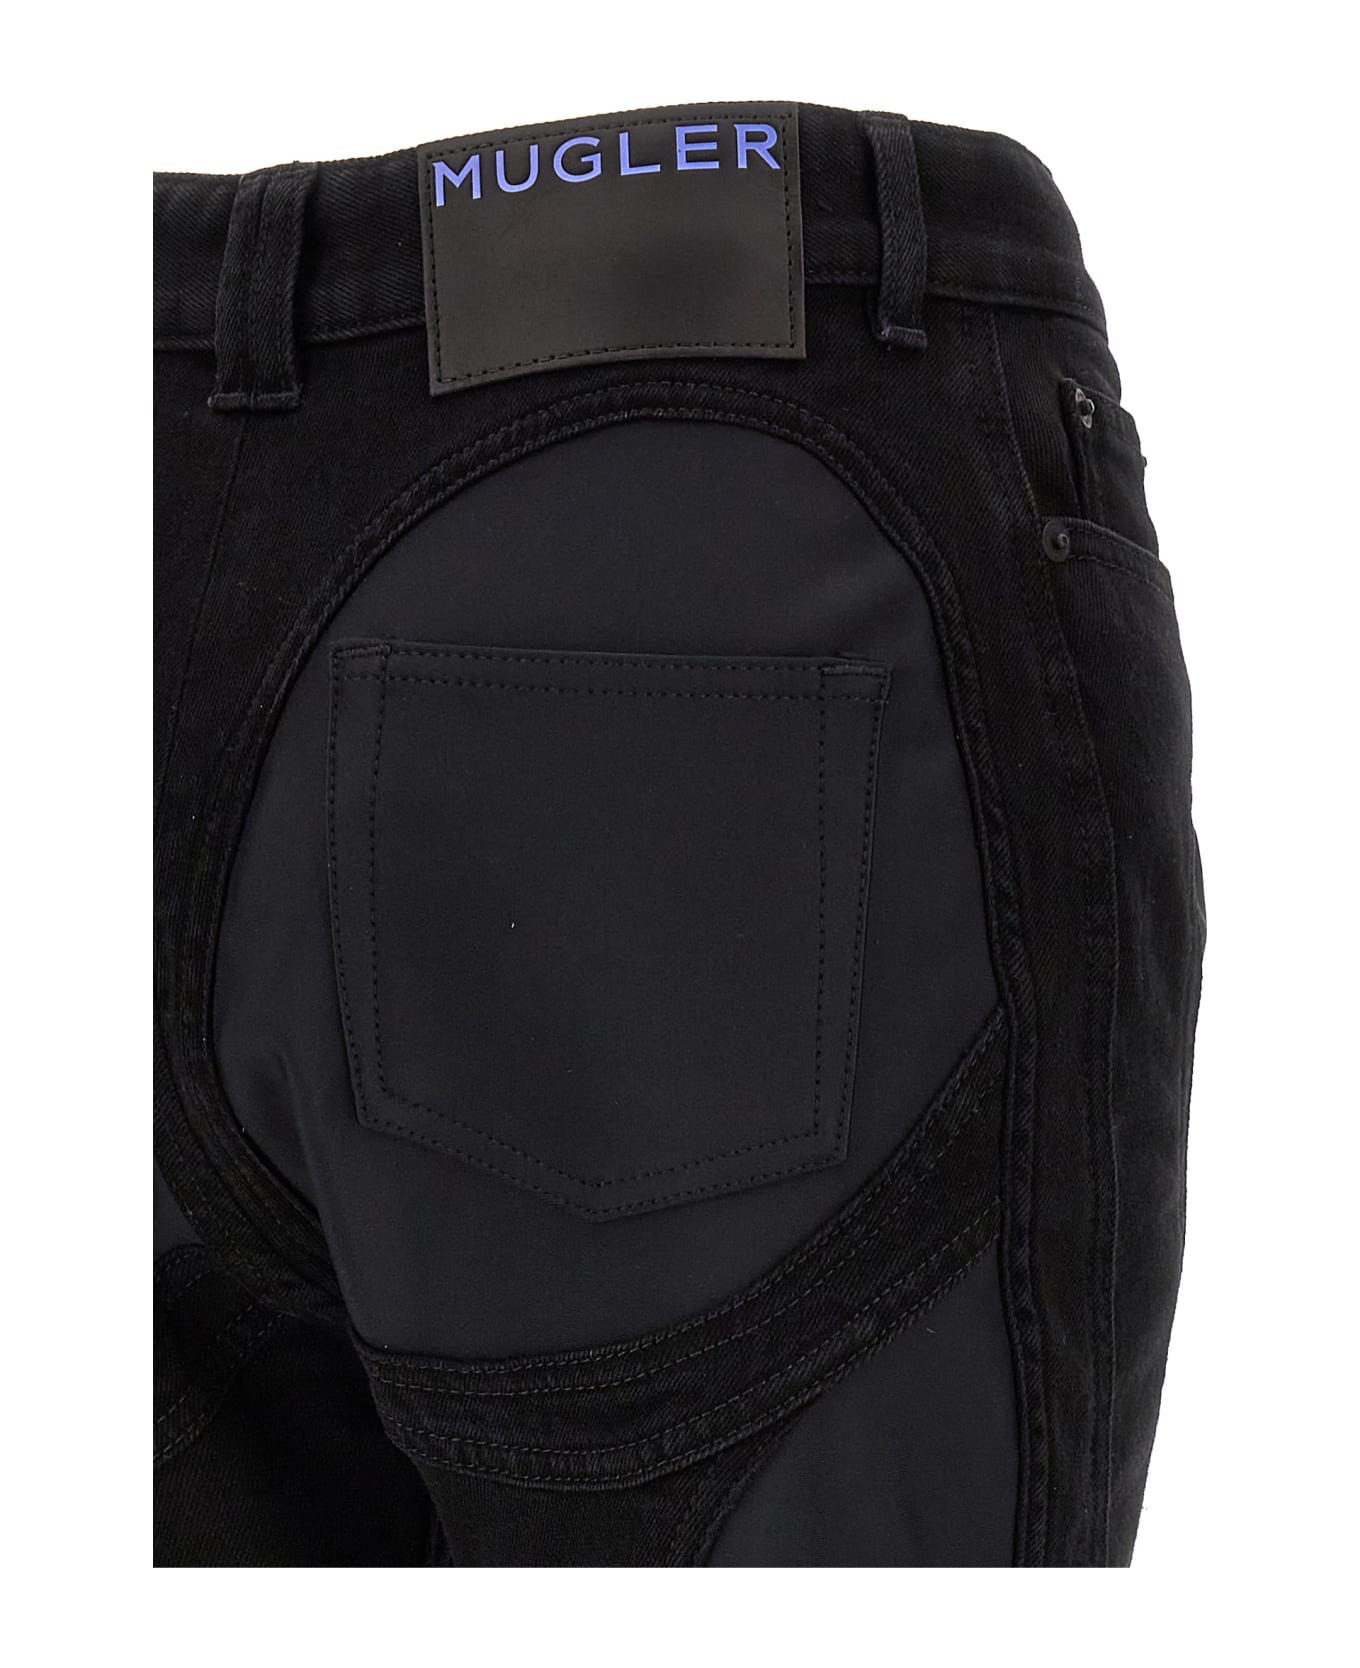 Mugler 'zipped Bi-material' Jeans - Black